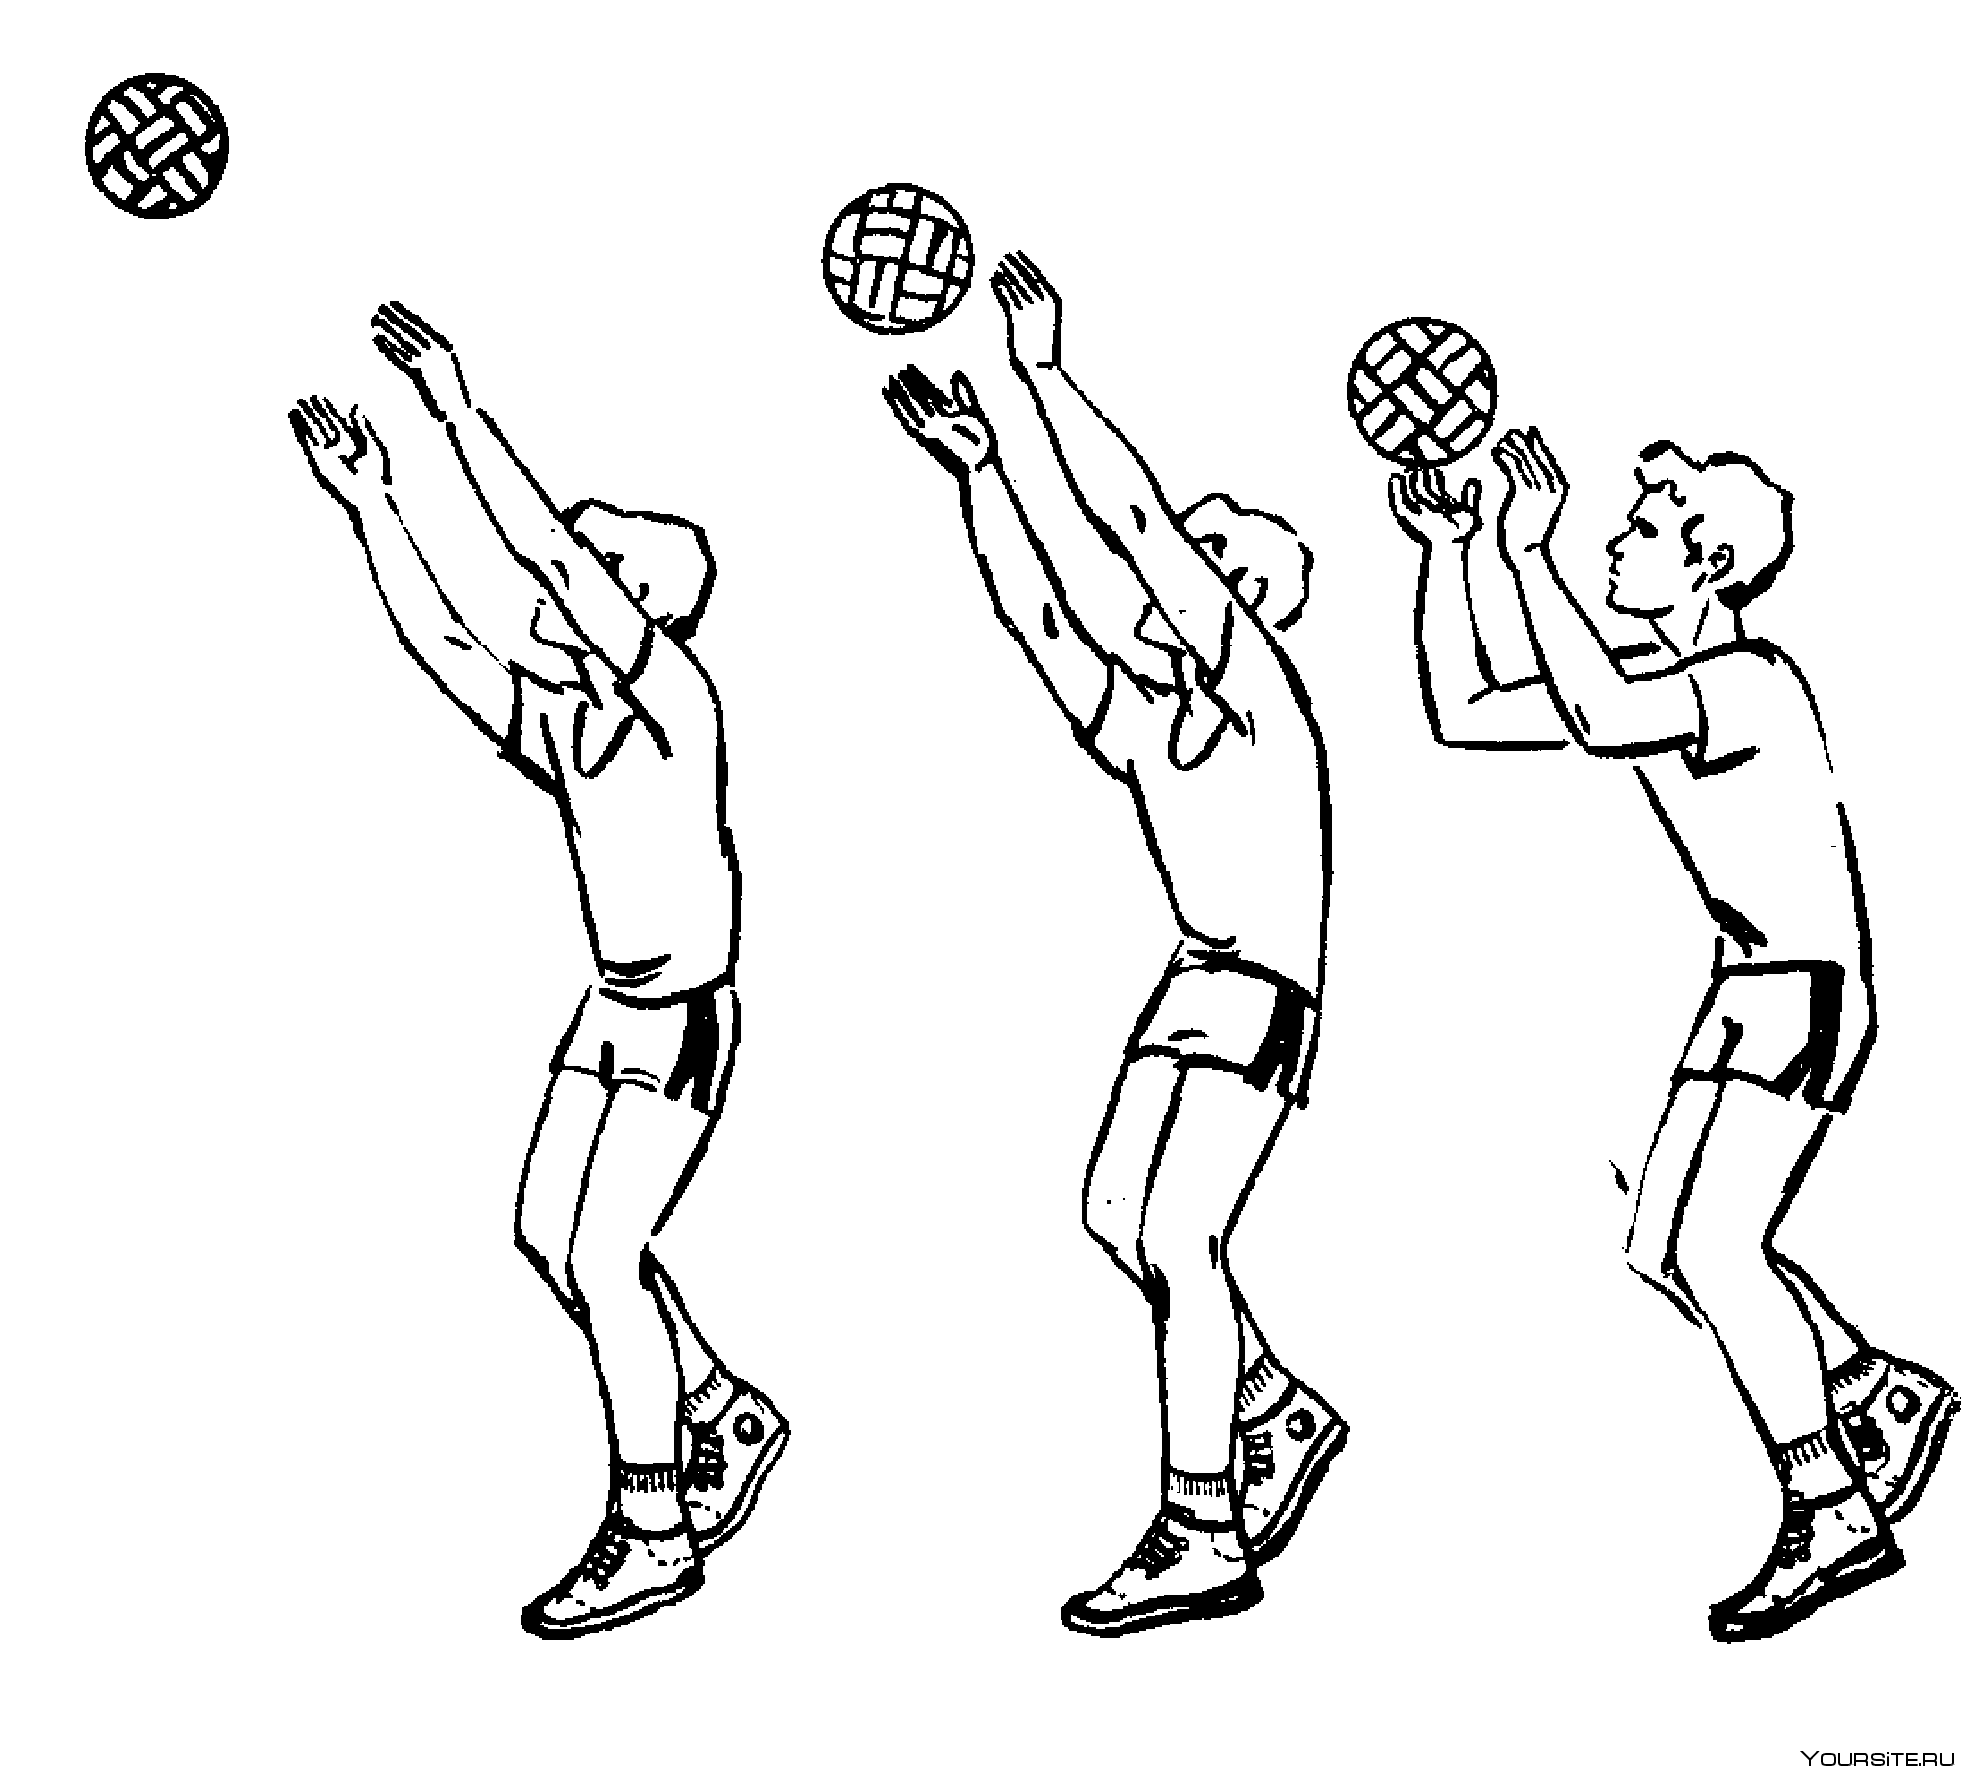 Передача в волейболе. Передача мяча(сверху двумя руками ,снизу двумя руками в волейболе. Передача мяча сверху двумя руками в волейболе. Передача мяча 2 руками сверху в волейболе. Прием мяча снизу в баскетболе техника выполнения.